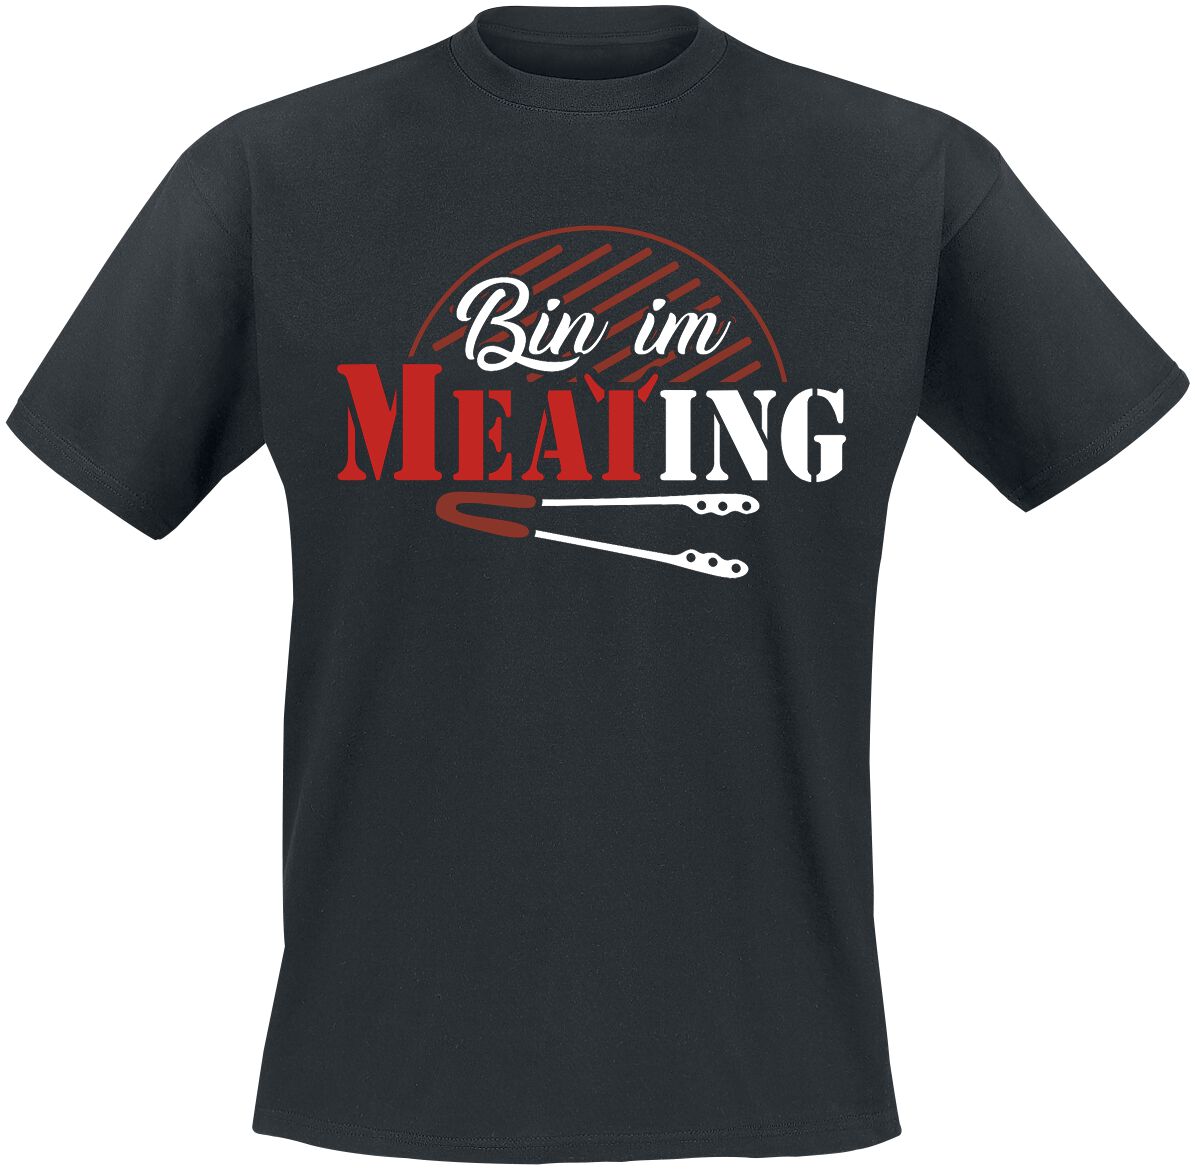 Food T-Shirt - Bin im Meating - S bis 5XL - für Männer - Größe 4XL - schwarz